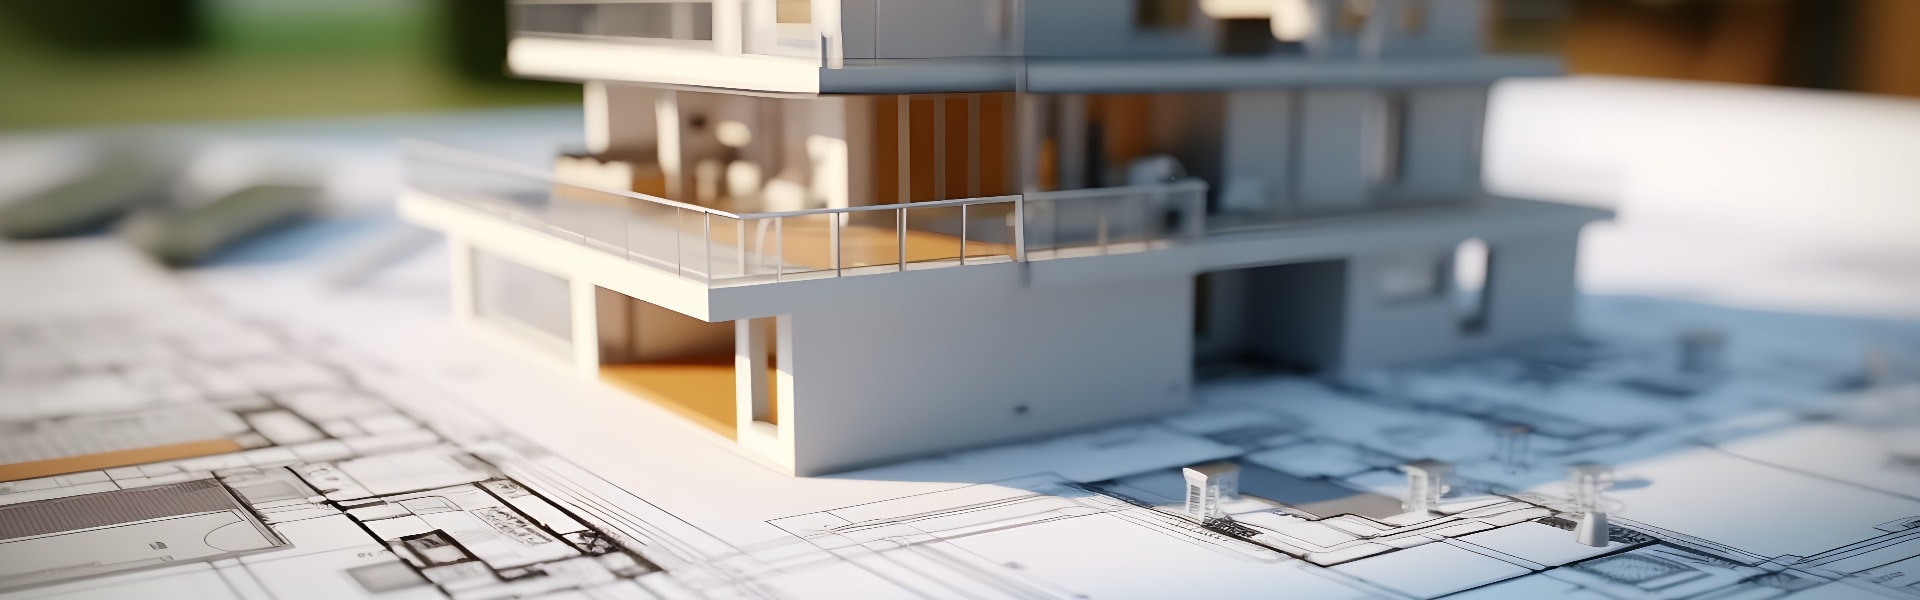 3d Modell eines kleinen Hauses auf einem Architektur-Grundriss